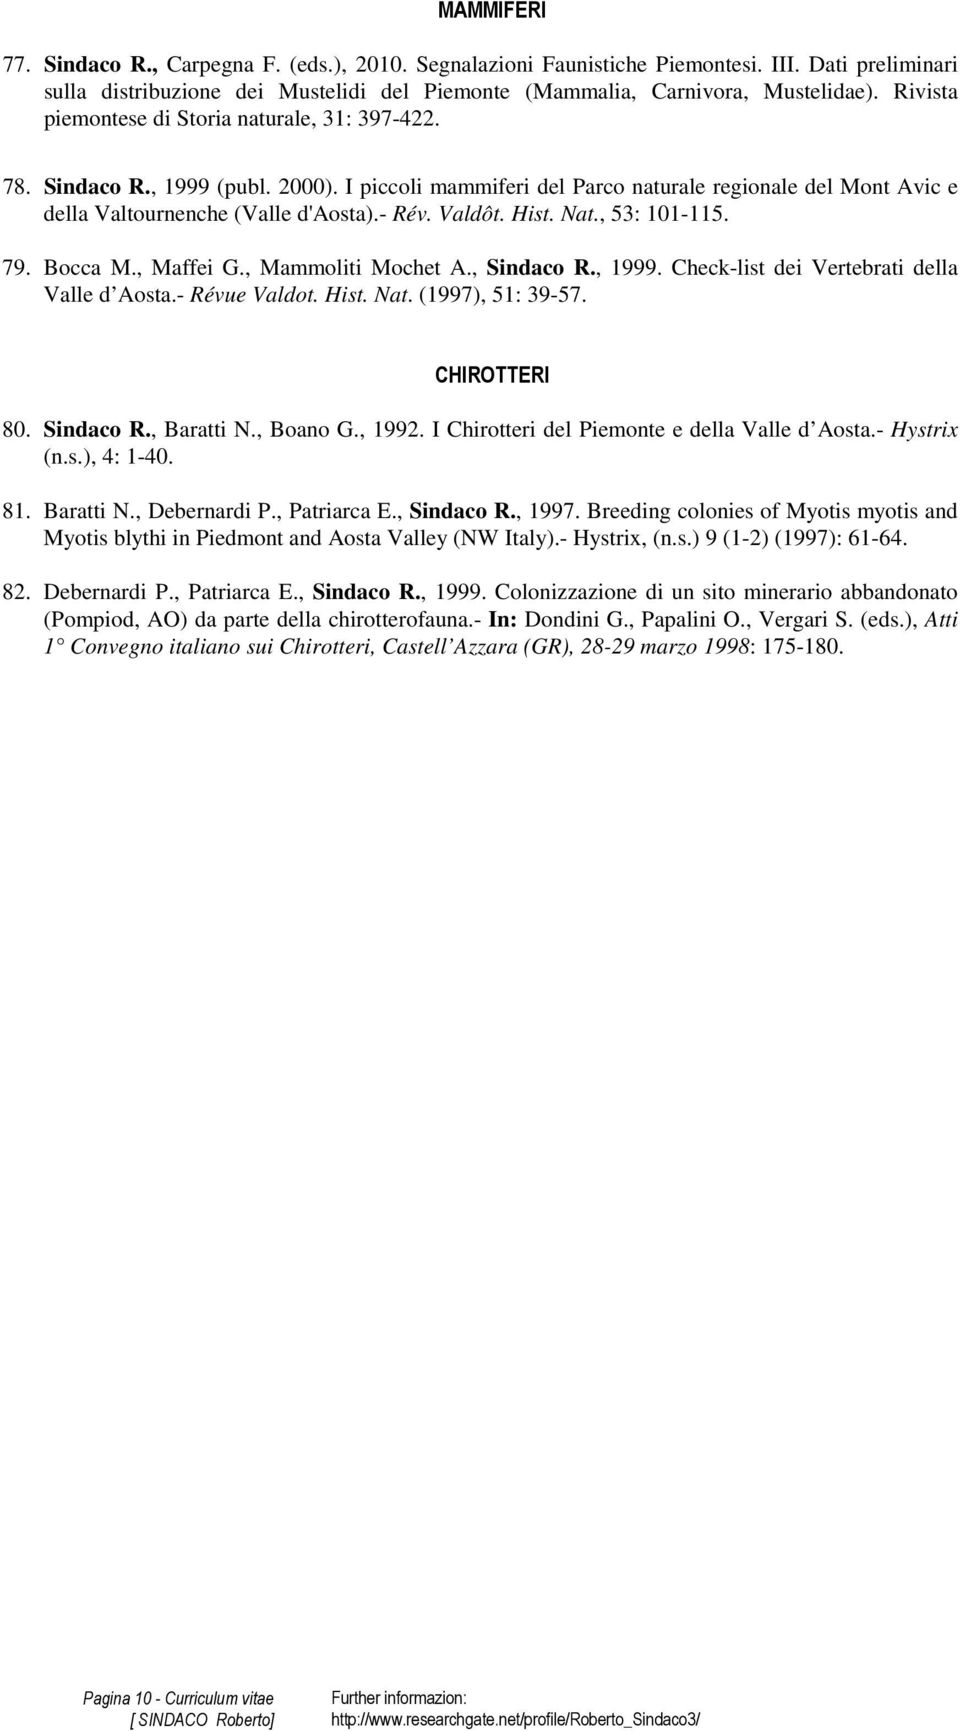 Valdôt. Hist. Nat., 53: 101-115. 79. Bocca M., Maffei G., Mammoliti Mochet A., Sindaco R., 1999. Check-list dei Vertebrati della Valle d Aosta.- Révue Valdot. Hist. Nat. (1997), 51: 39-57.